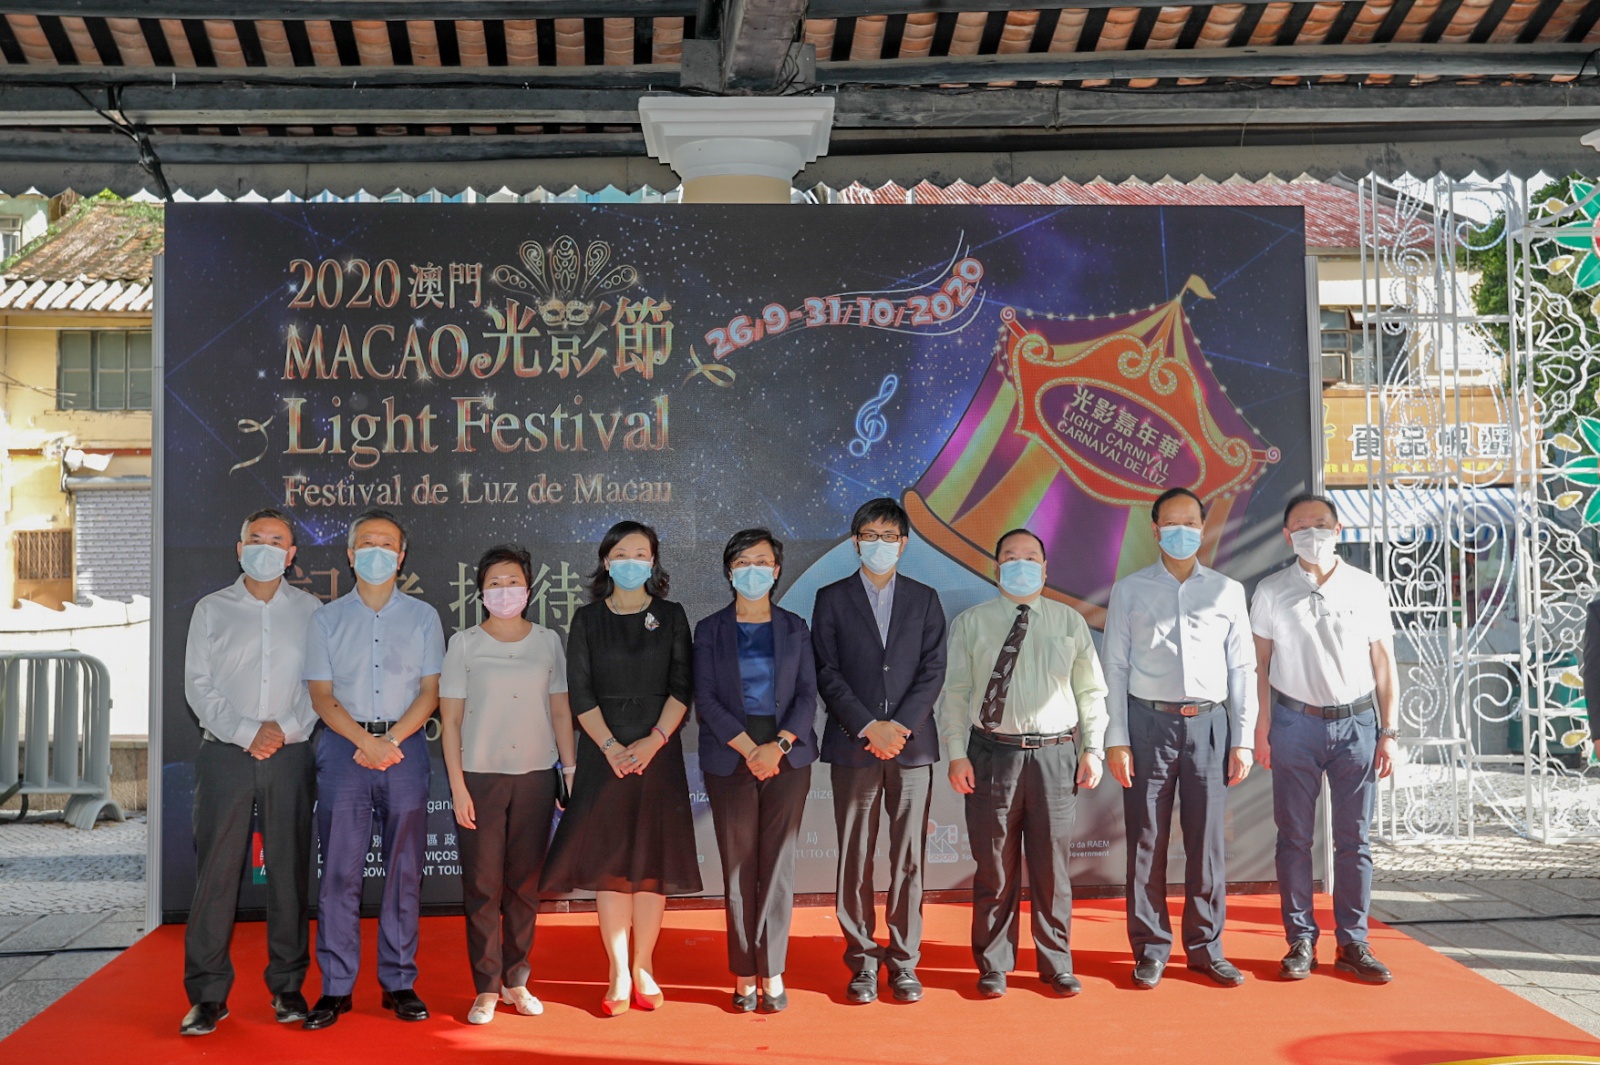 Macao Light Festival